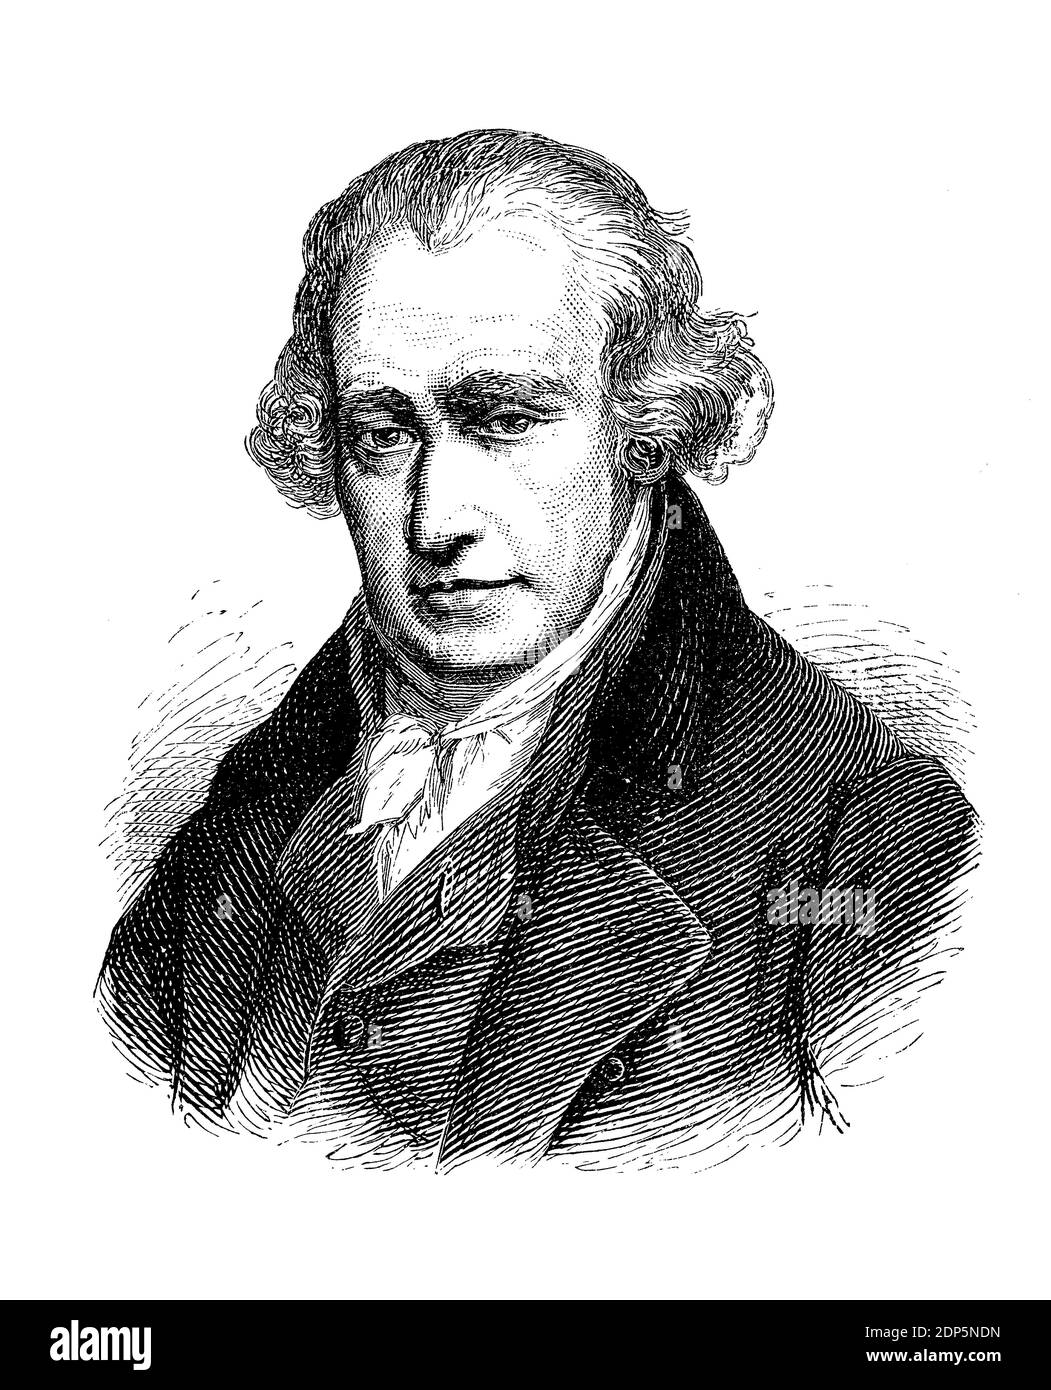 Grabado retrato de James Watt (1736–1819) inventor escocés, ingeniero mecánico y químico, famoso por su motor de vapor de potencia y eficiencia mejoradas Foto de stock